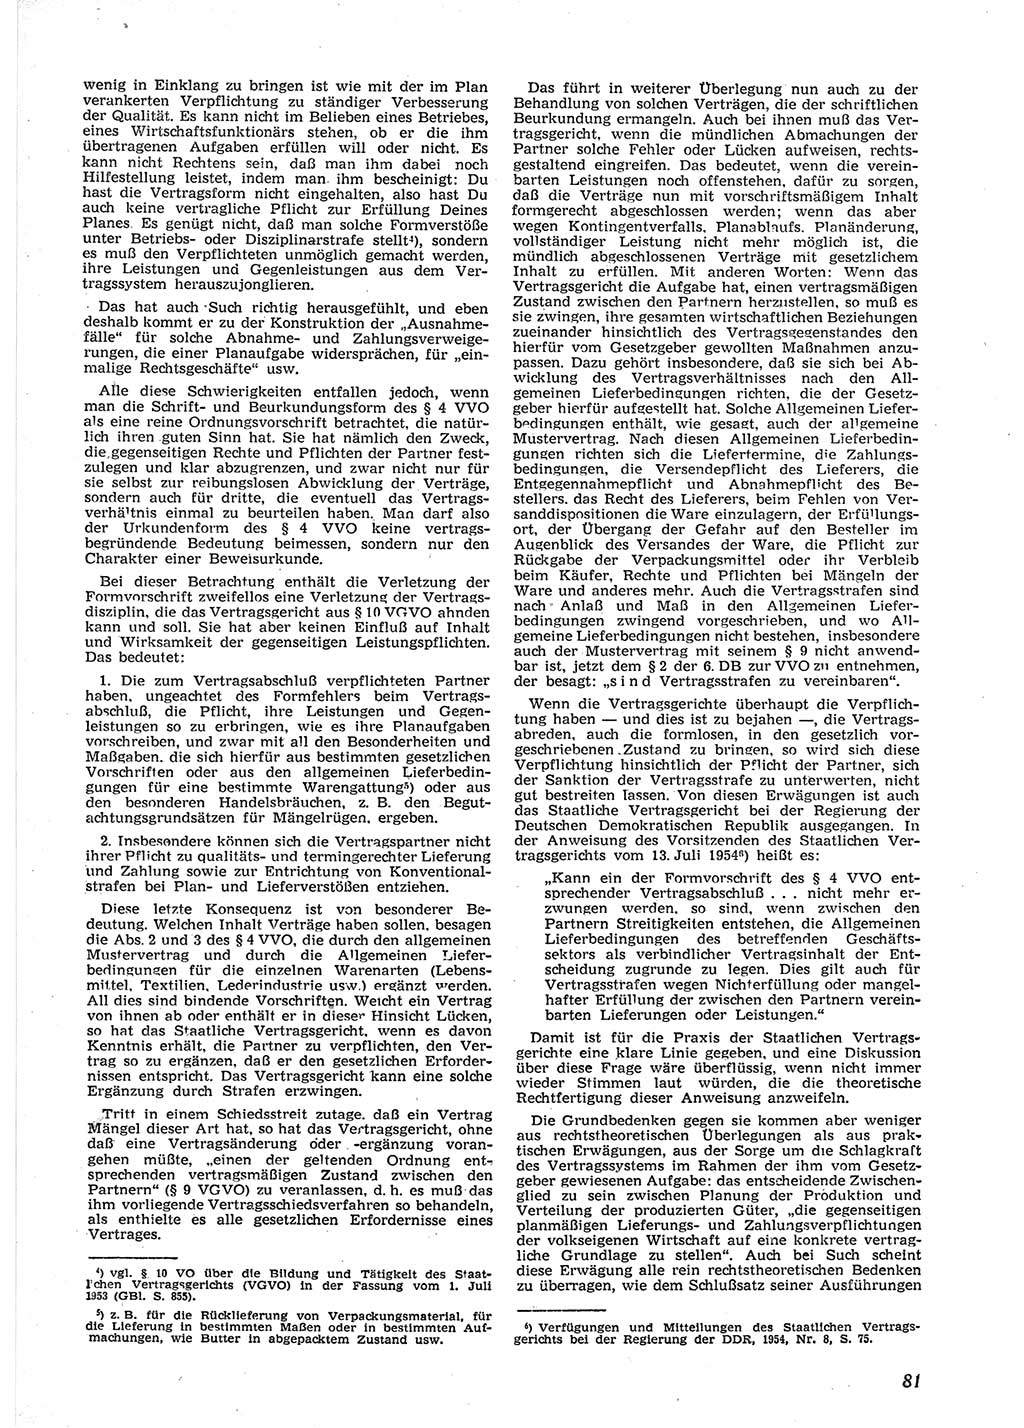 Neue Justiz (NJ), Zeitschrift für Recht und Rechtswissenschaft [Deutsche Demokratische Republik (DDR)], 9. Jahrgang 1955, Seite 81 (NJ DDR 1955, S. 81)